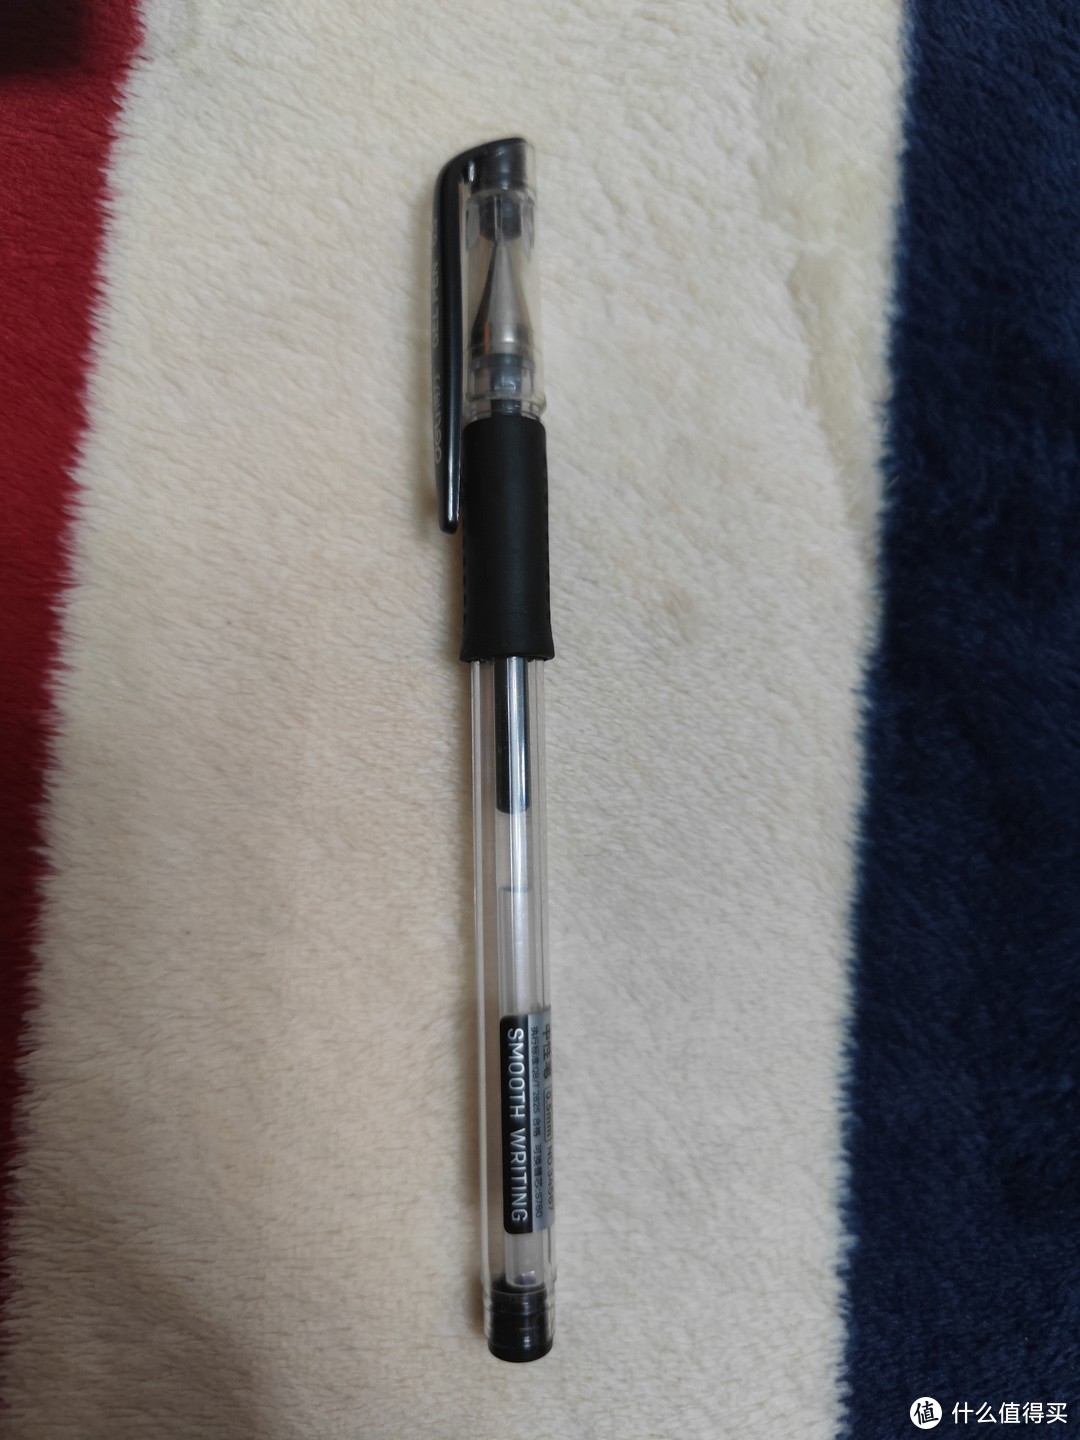 你的学生生涯，有这支笔的身影吗？